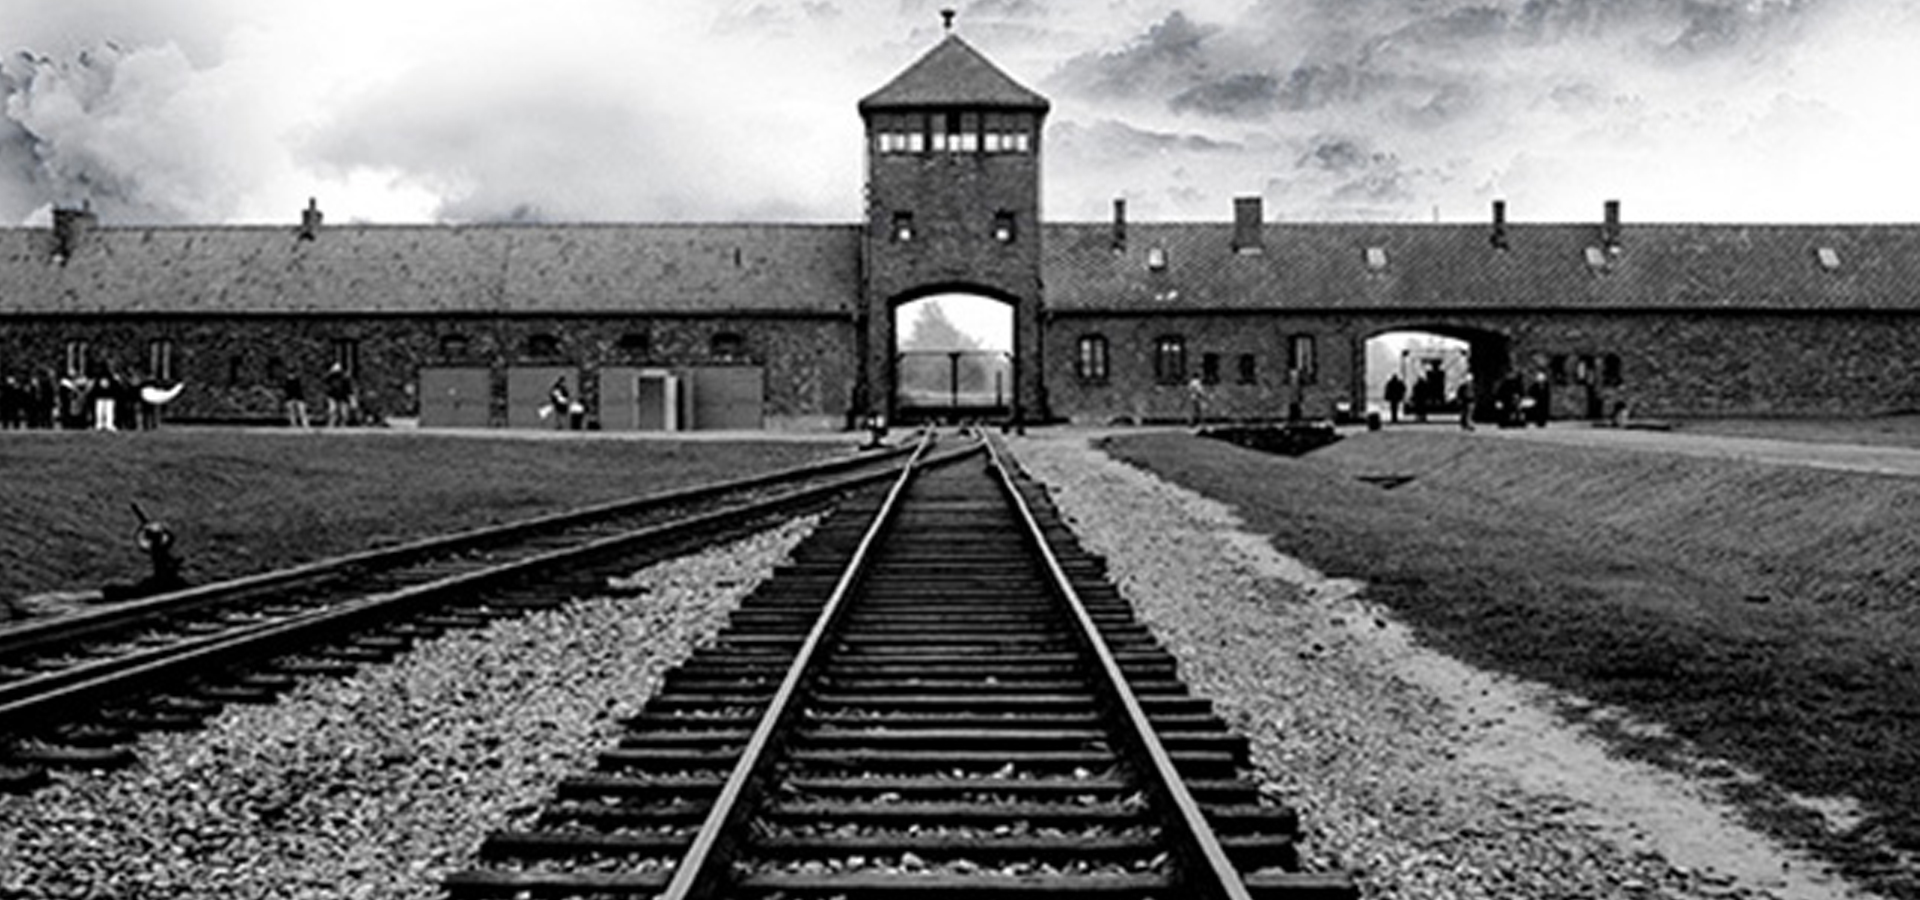 Ο οίκος ανοχής του Άουσβιτς που έστησαν οι Γερμανοί για να αυξήσουν την παραγωγικότητα των κρατουμένων